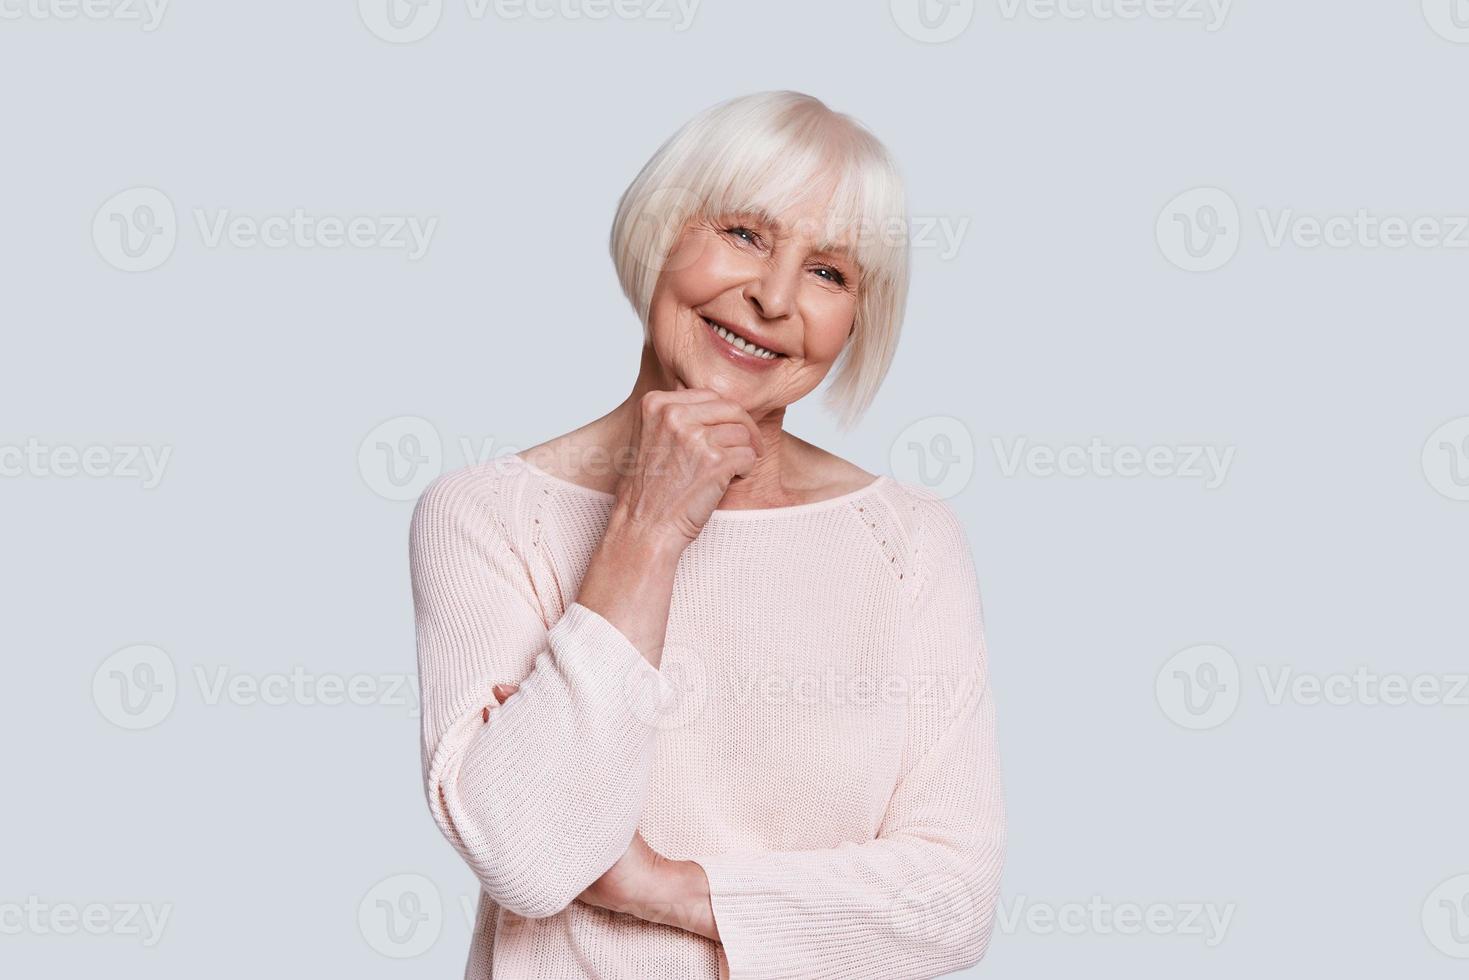 wahre weibliche Schönheit. Schöne Seniorin, die die Hand am Kinn hält und lächelt, während sie vor grauem Hintergrund steht foto